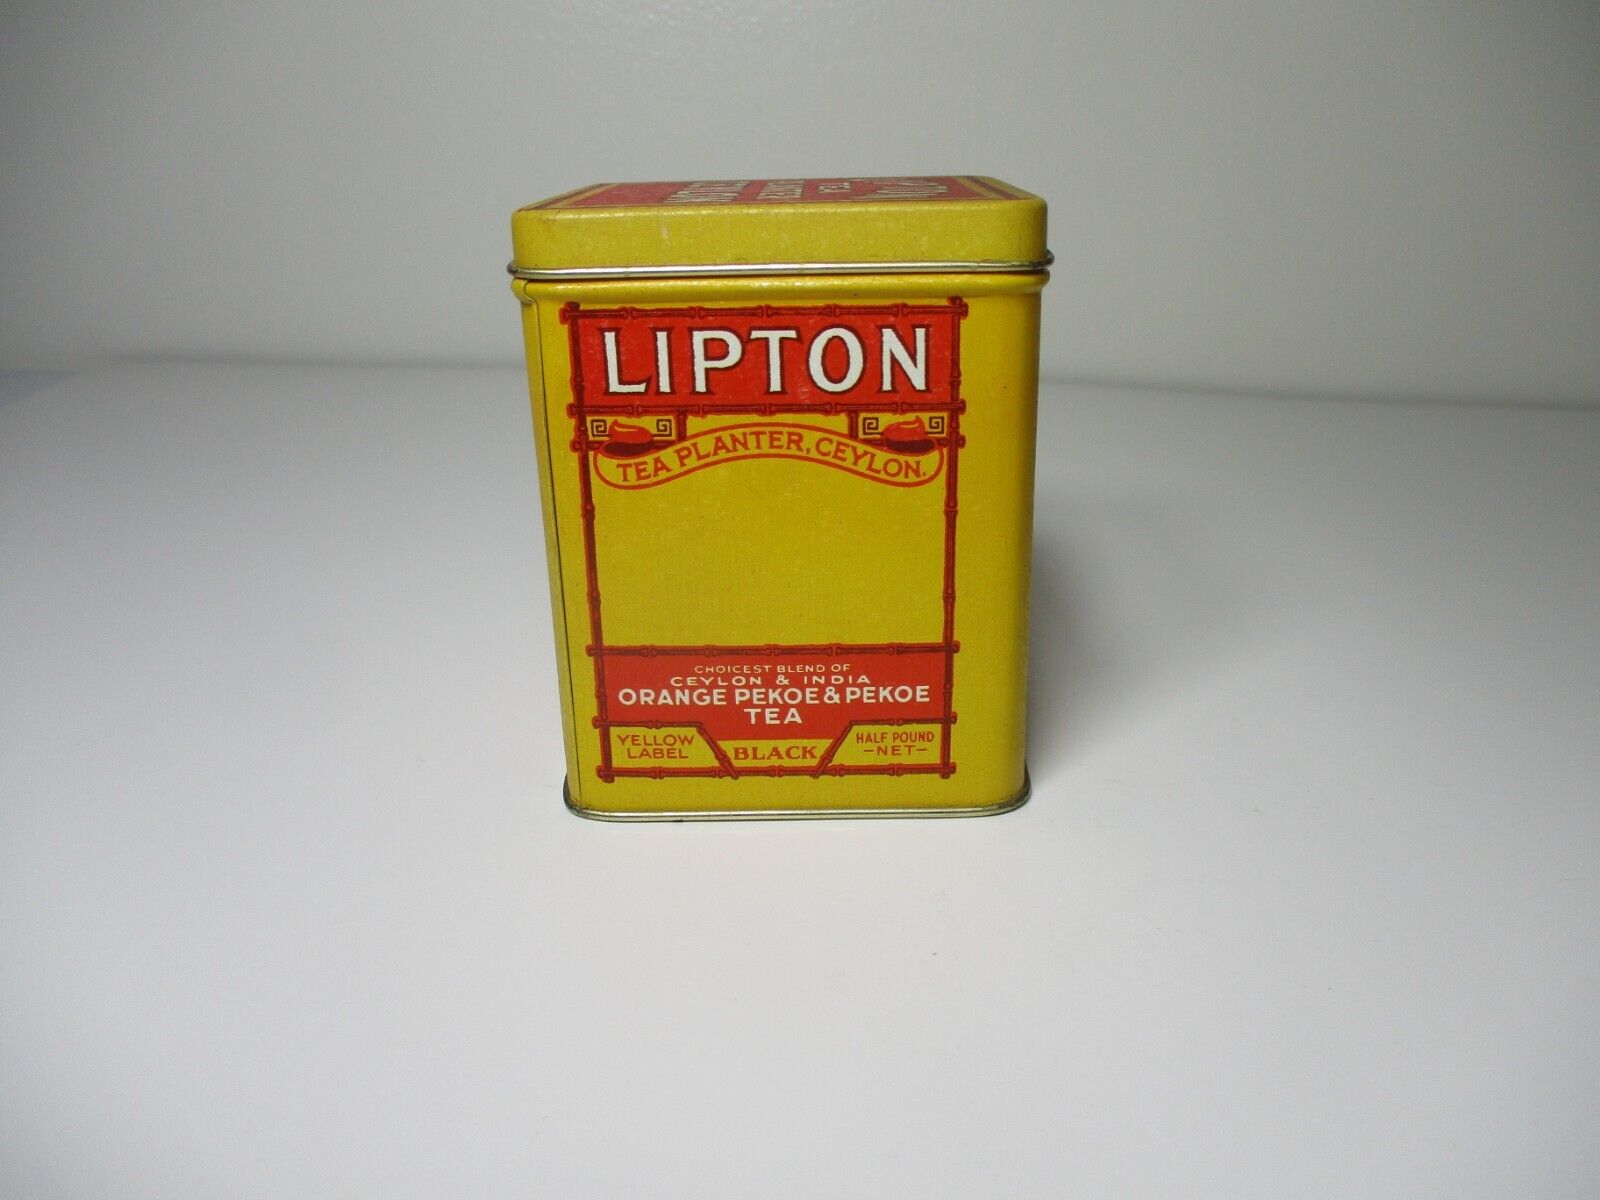 Vintage Lipton Tea Planter Ceylon Advertisement Tin Can Bristol Ware